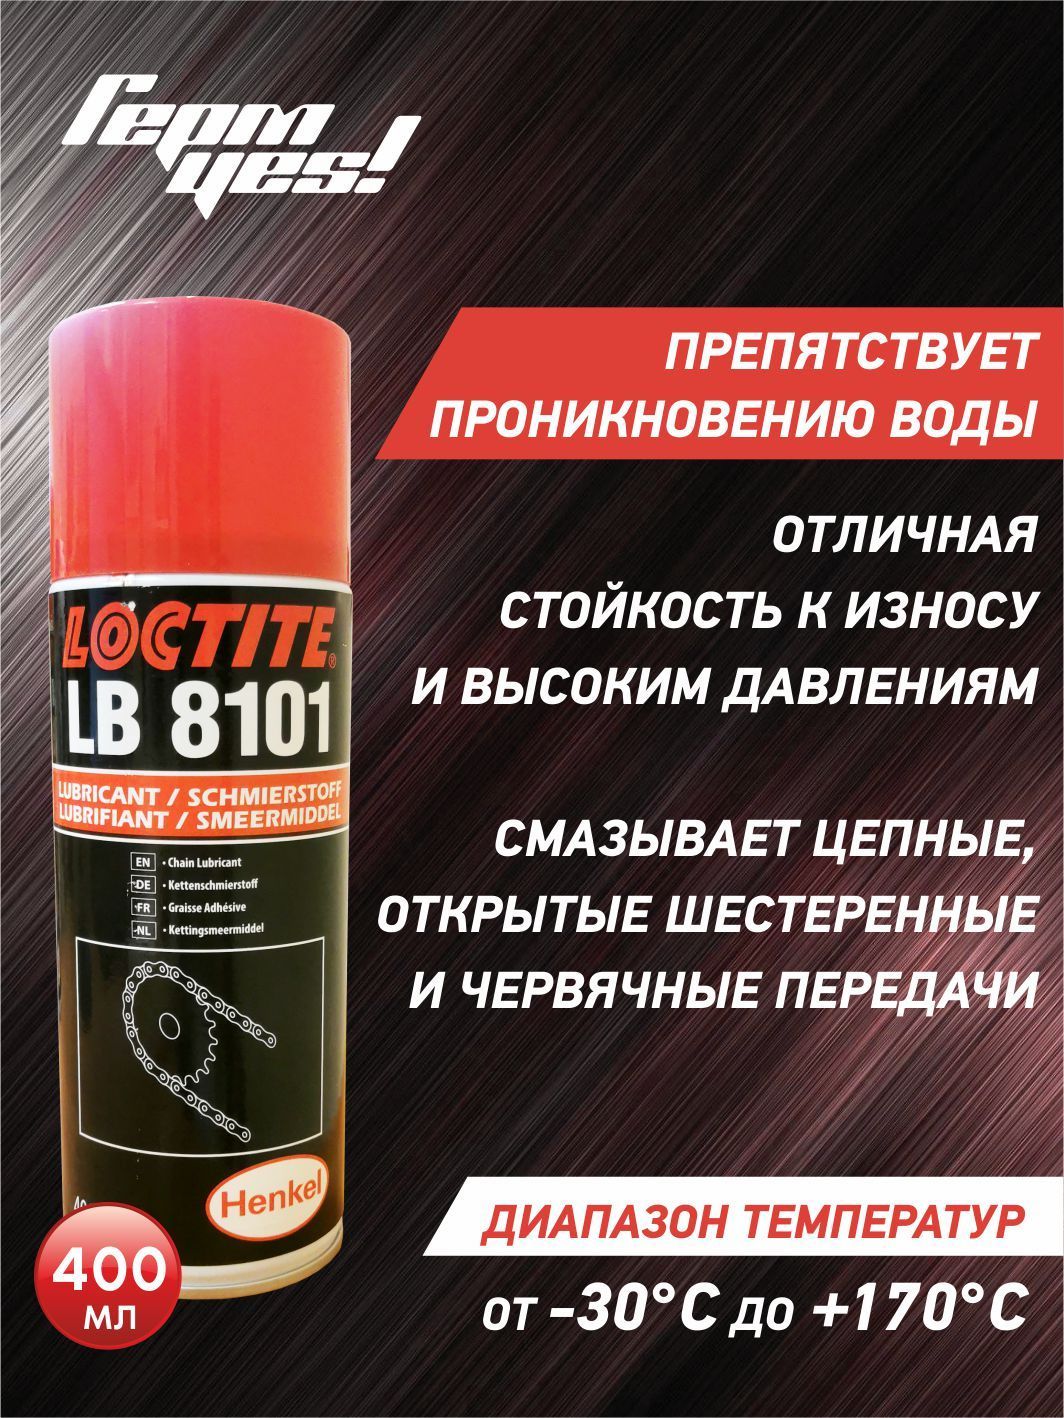 Lubrifiant Loctite LB 8005